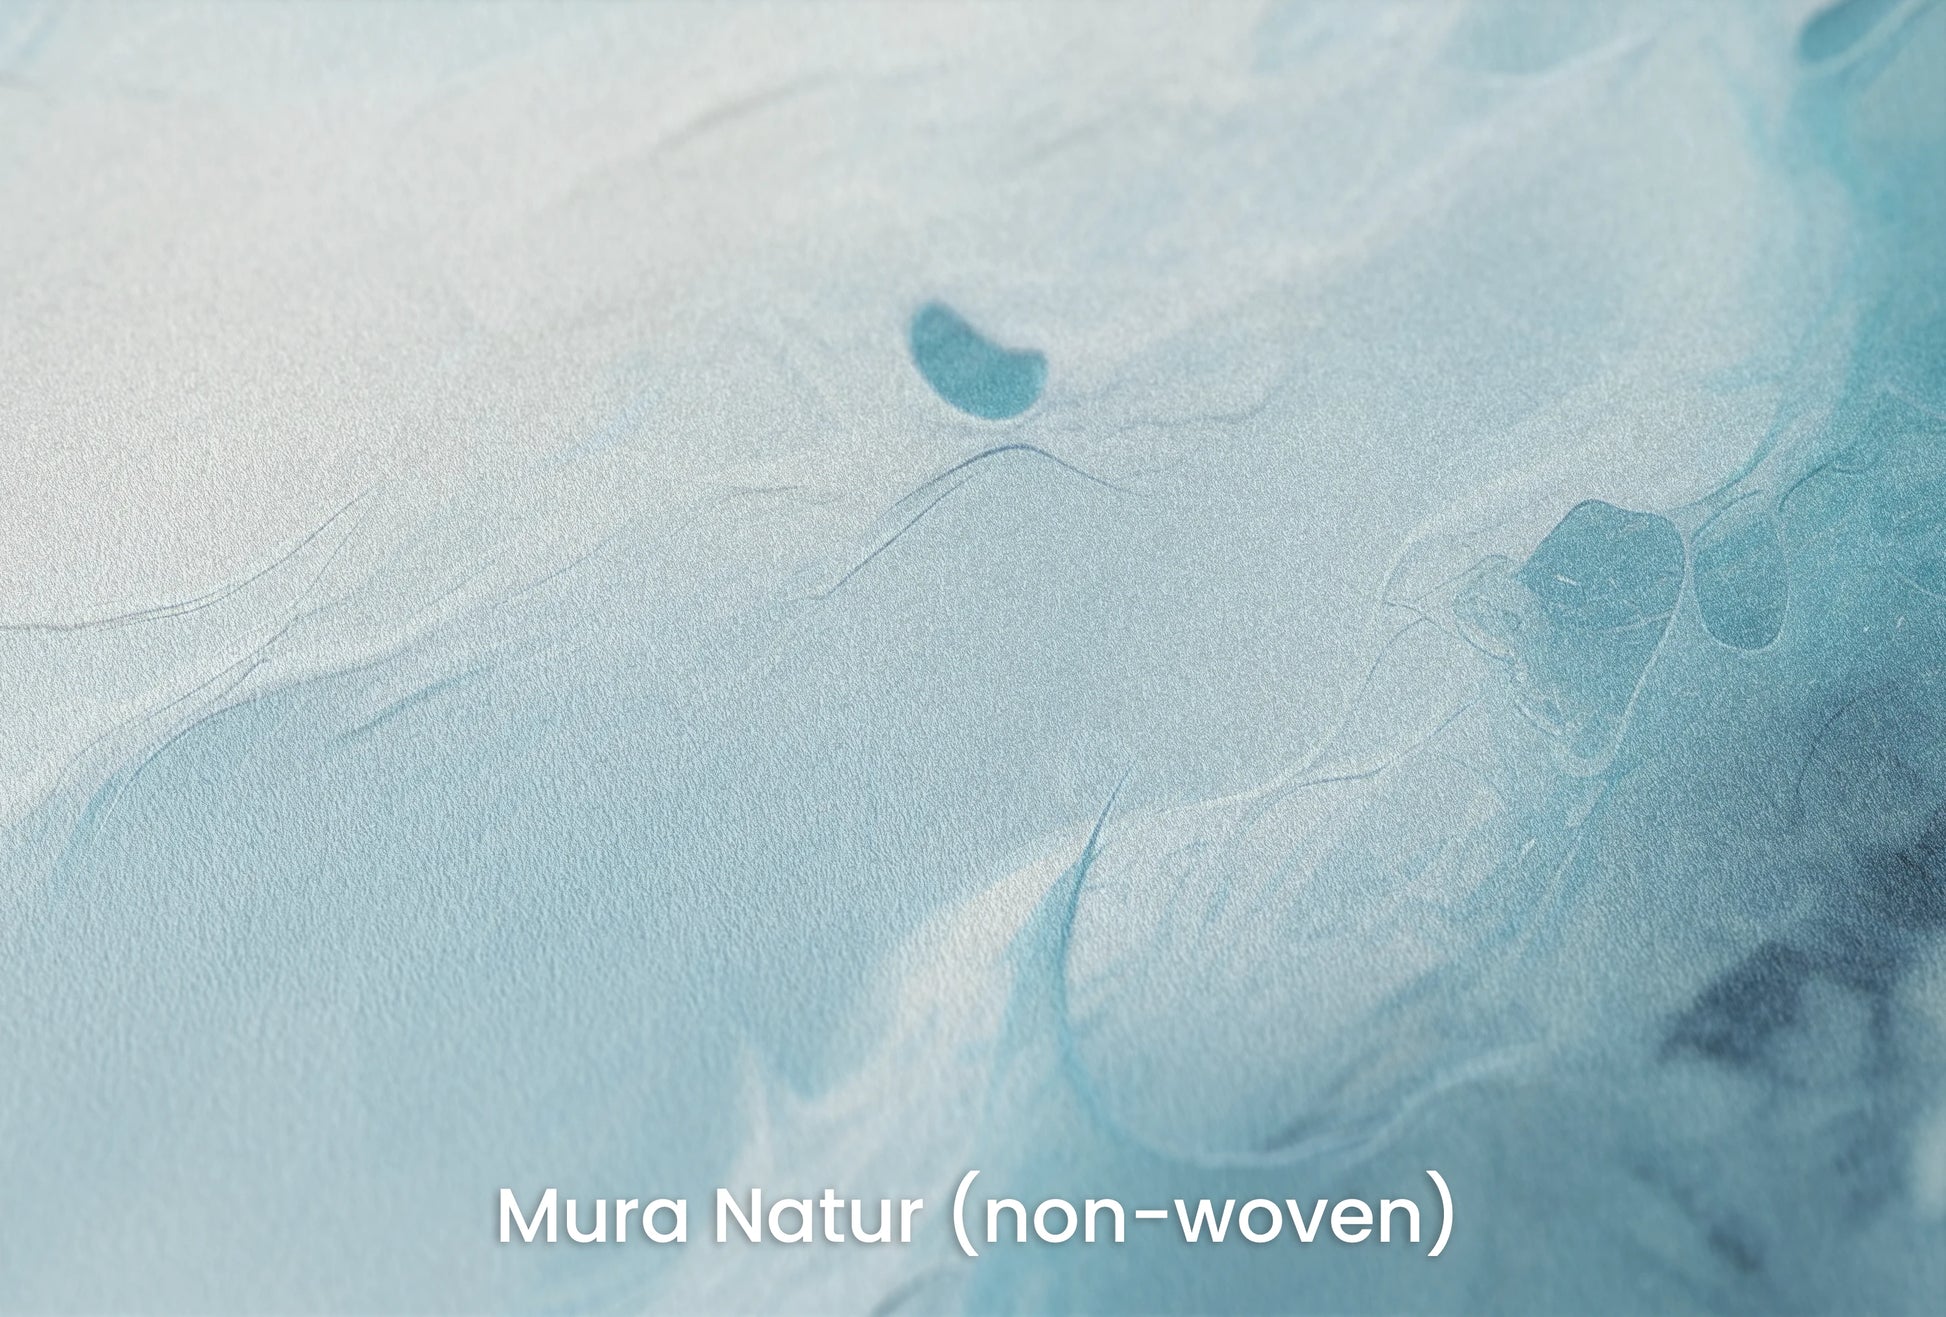 Zbliżenie na artystyczną fototapetę o nazwie Neptune's Whirl na podłożu Mura Natur (non-woven) - naturalne i ekologiczne podłoże.